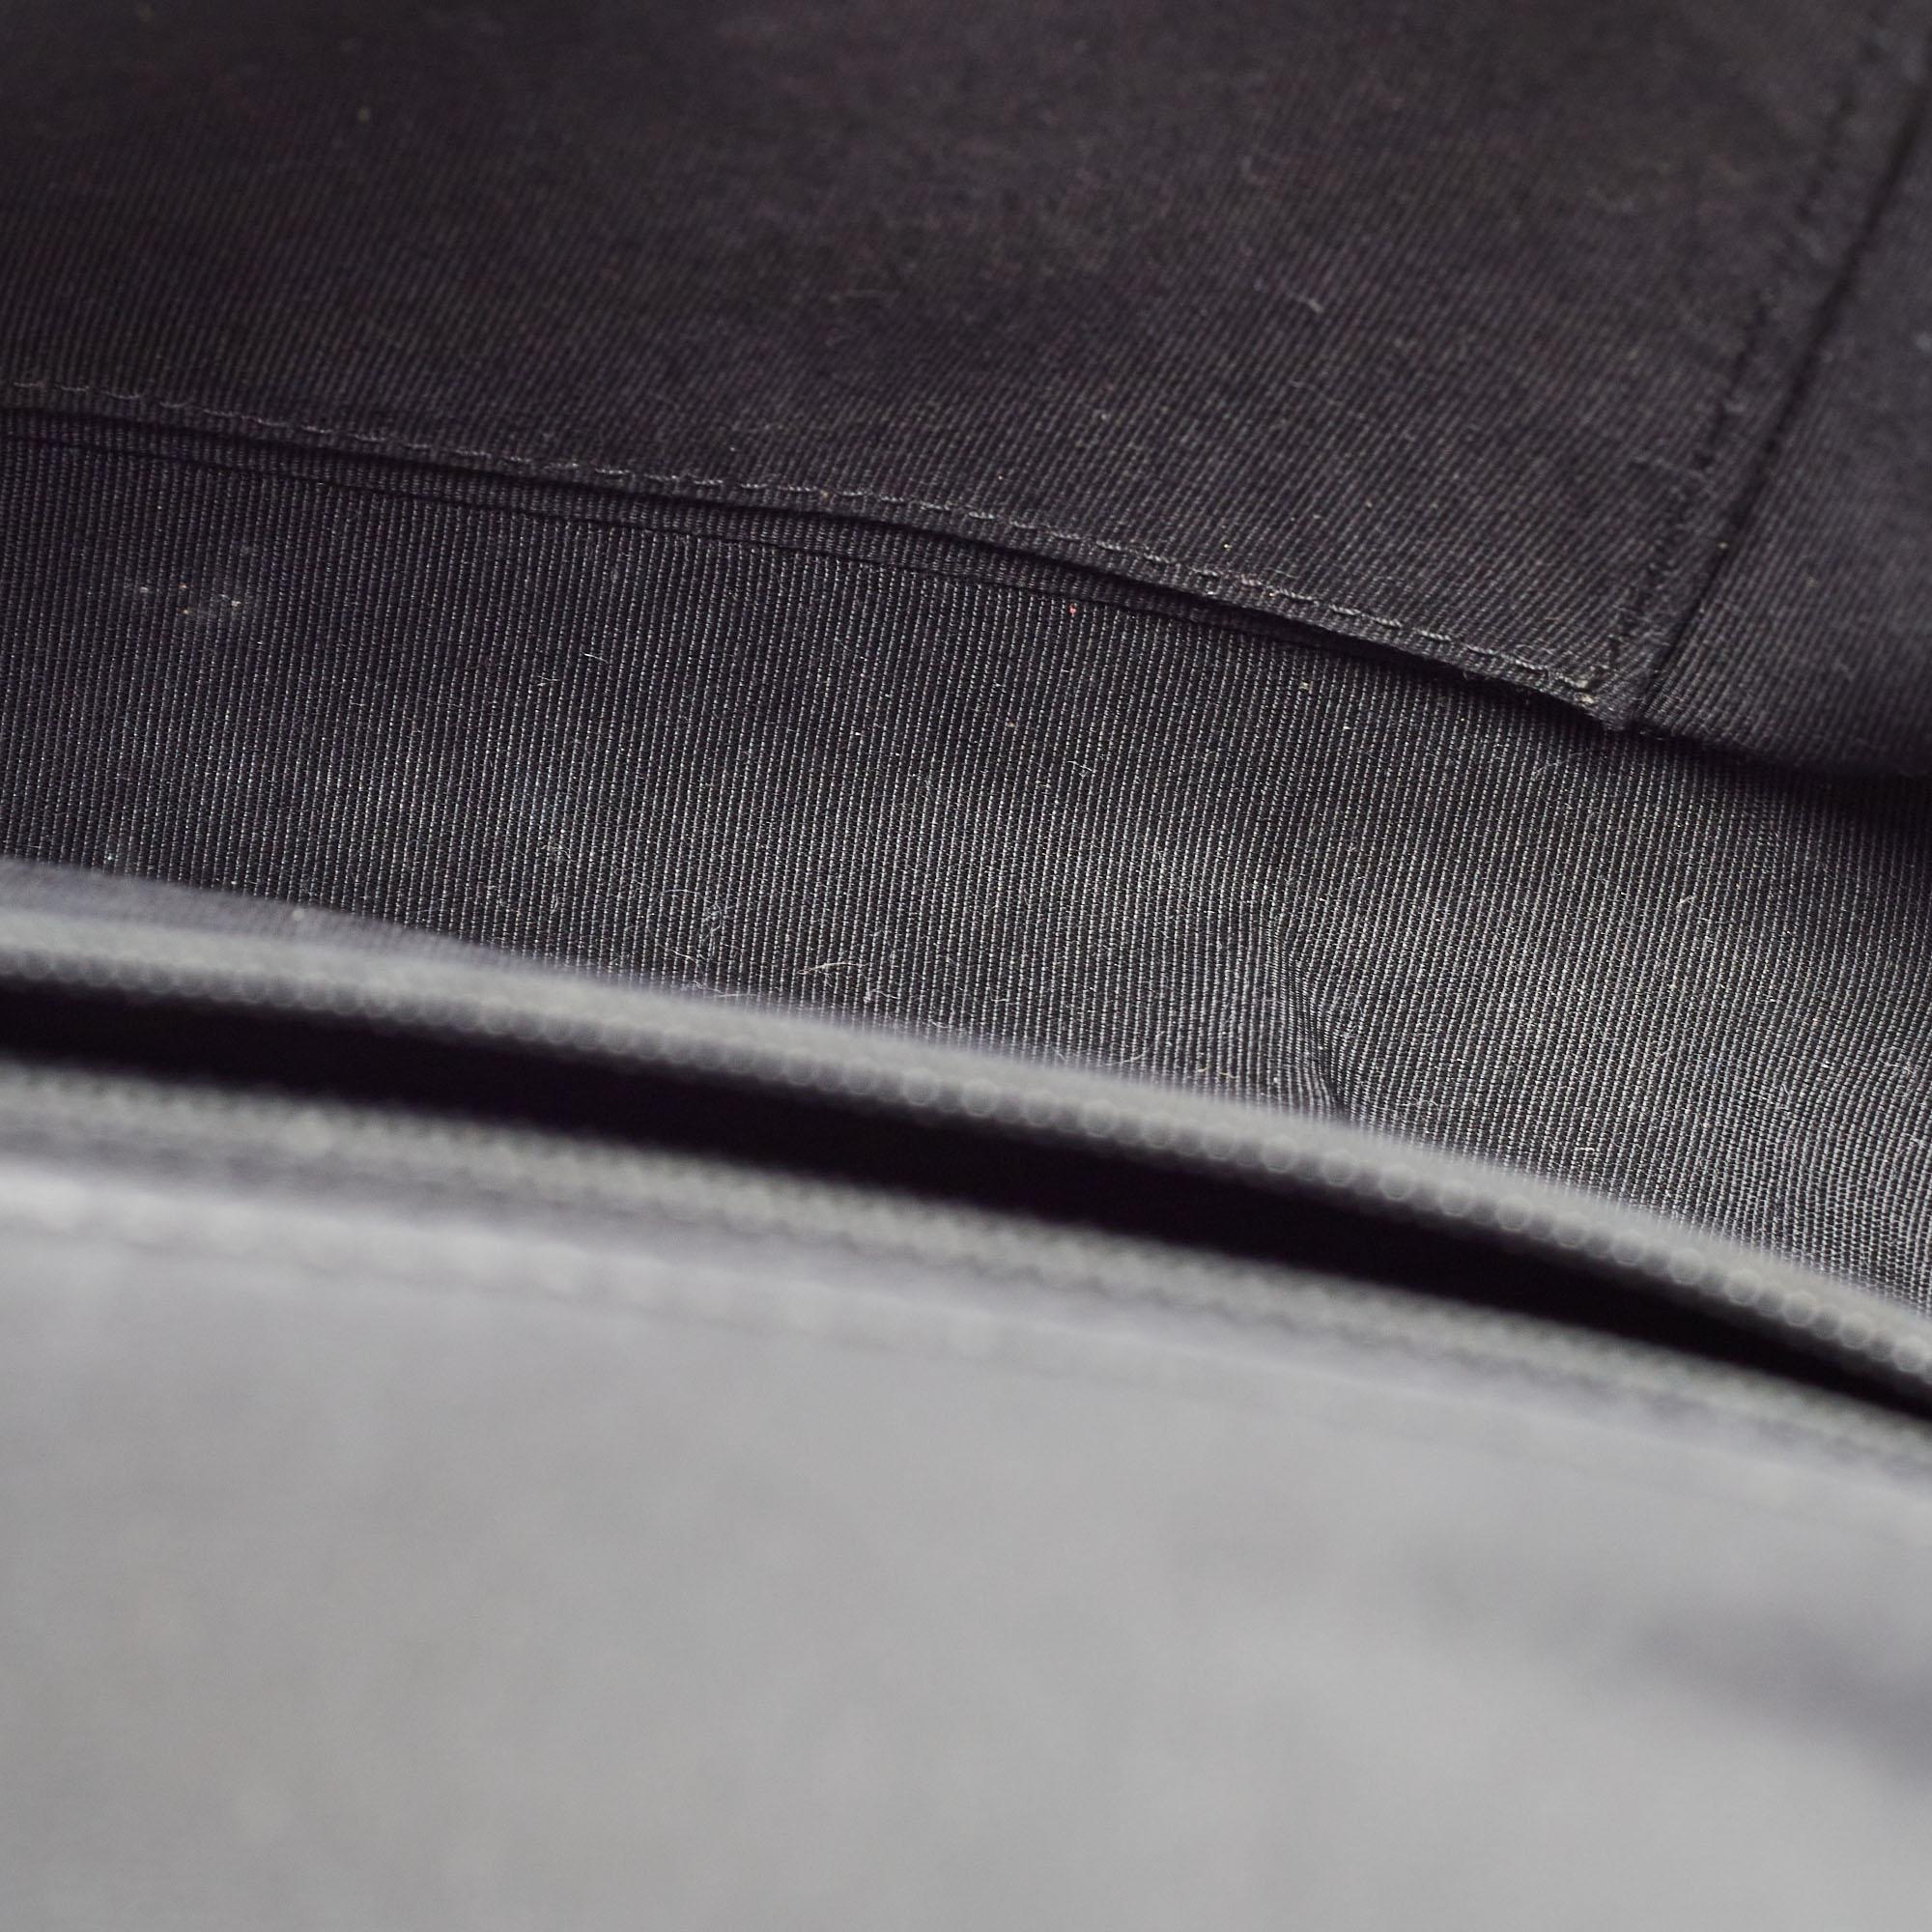 Chanel Black Glossy Leather New Medium Boy Bag 6